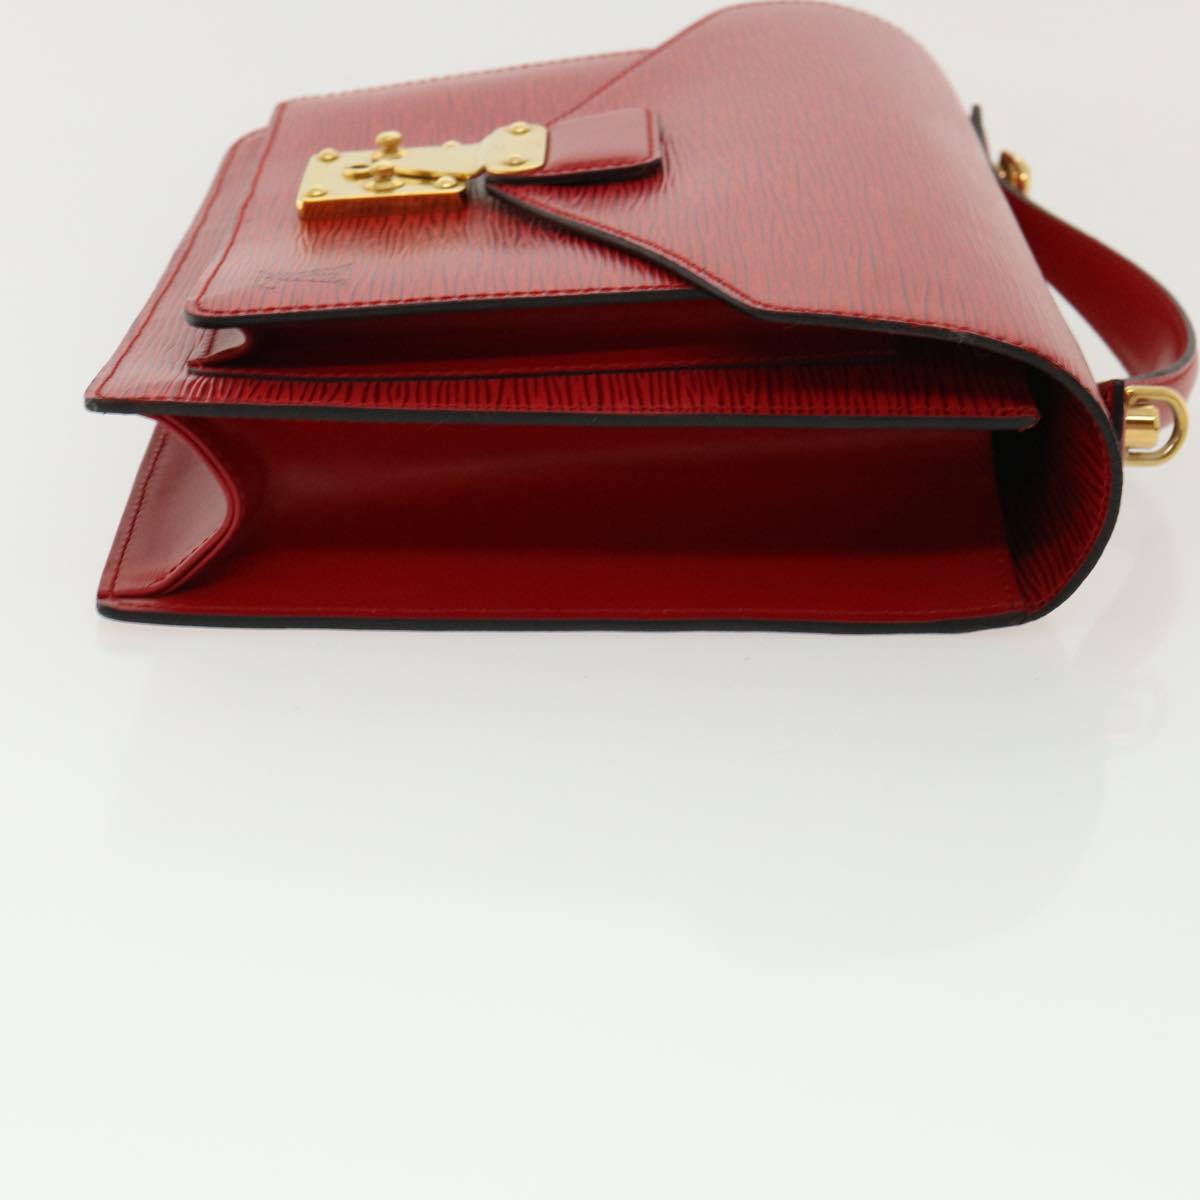 LOUIS VUITTON Epi Monceau Hand Bag Shoulder Bag 2Way Red M52127 LV Auth 32774